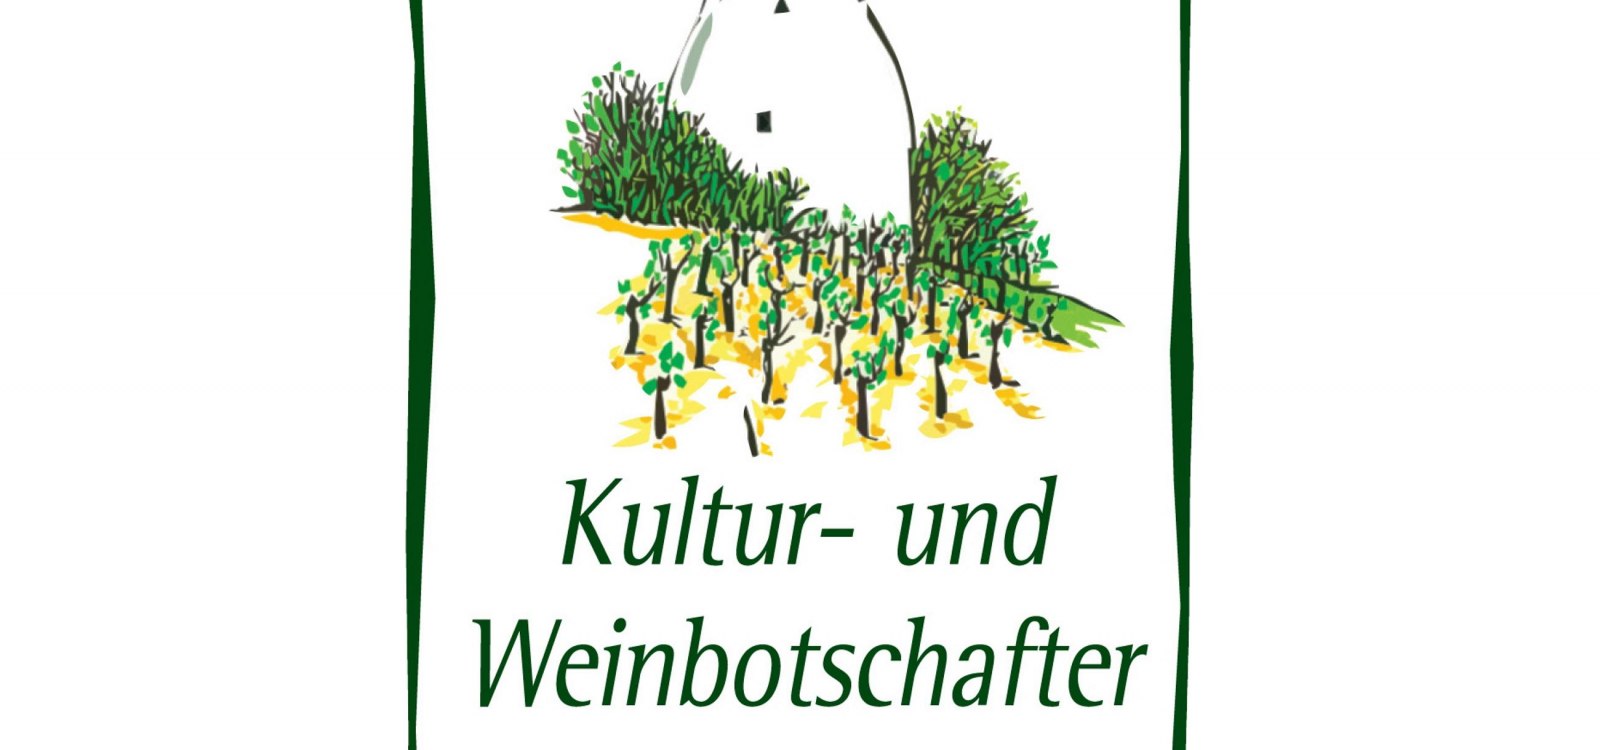 Logo KWB